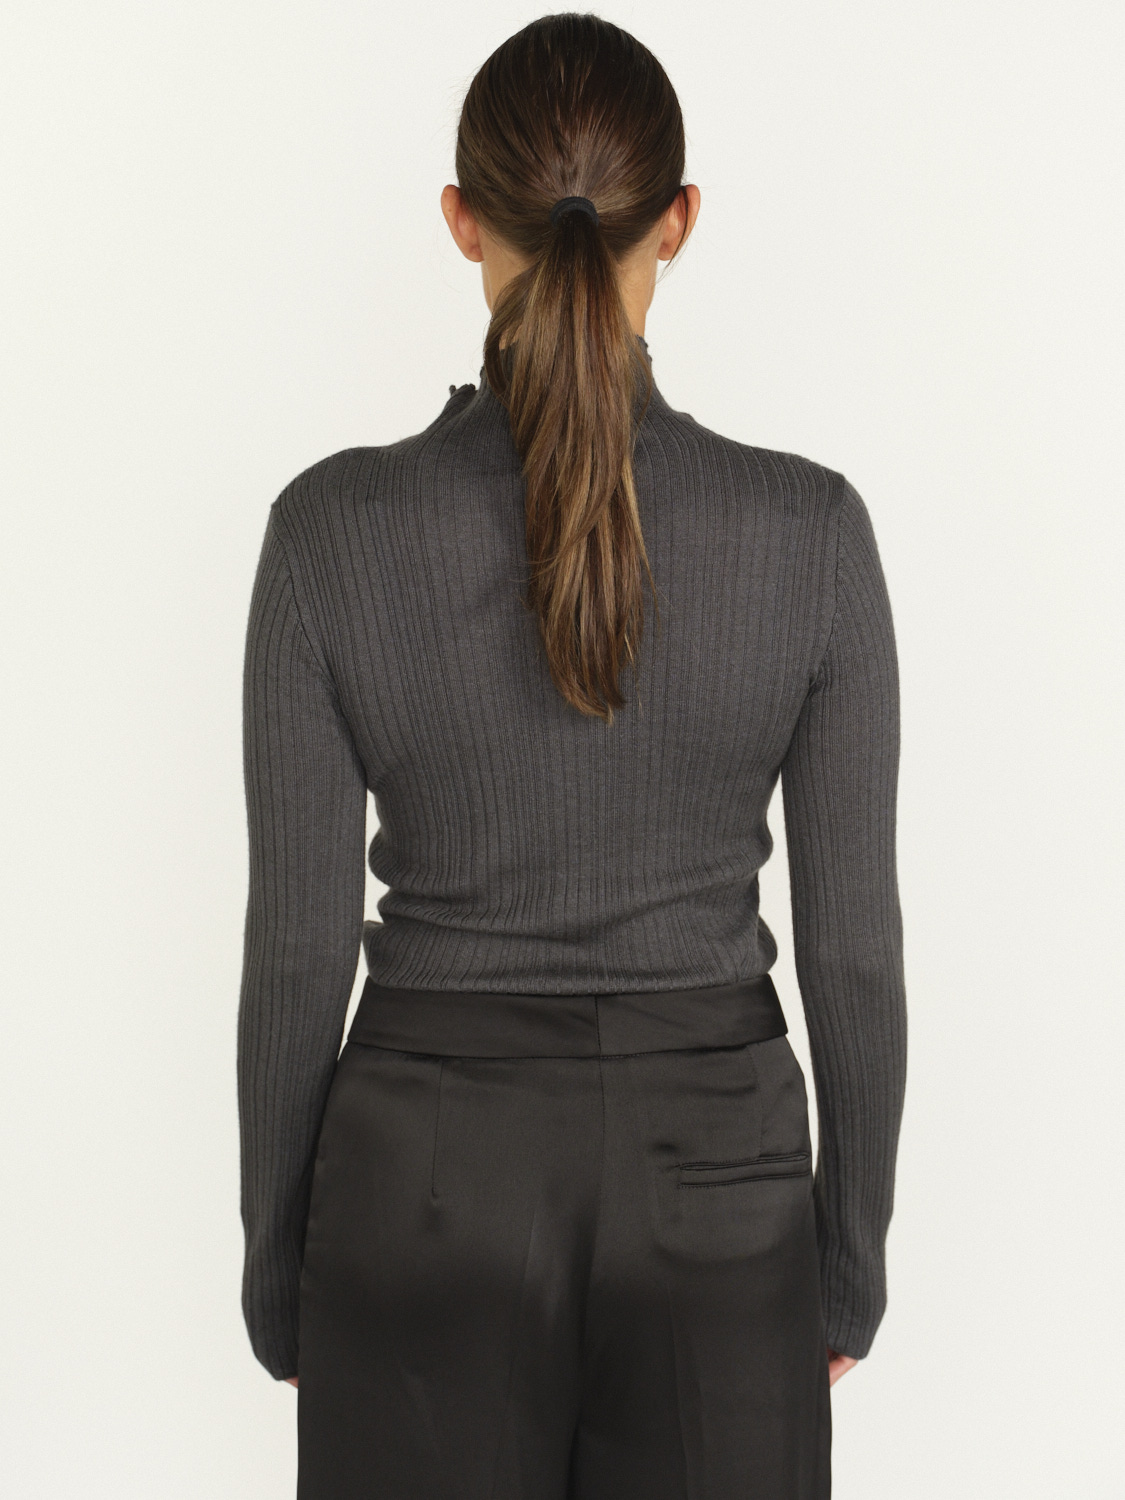 Iris von Arnim Cashmere Silk Sweater - Ripp-Pullover aus Kaschmir und Seide   grau L